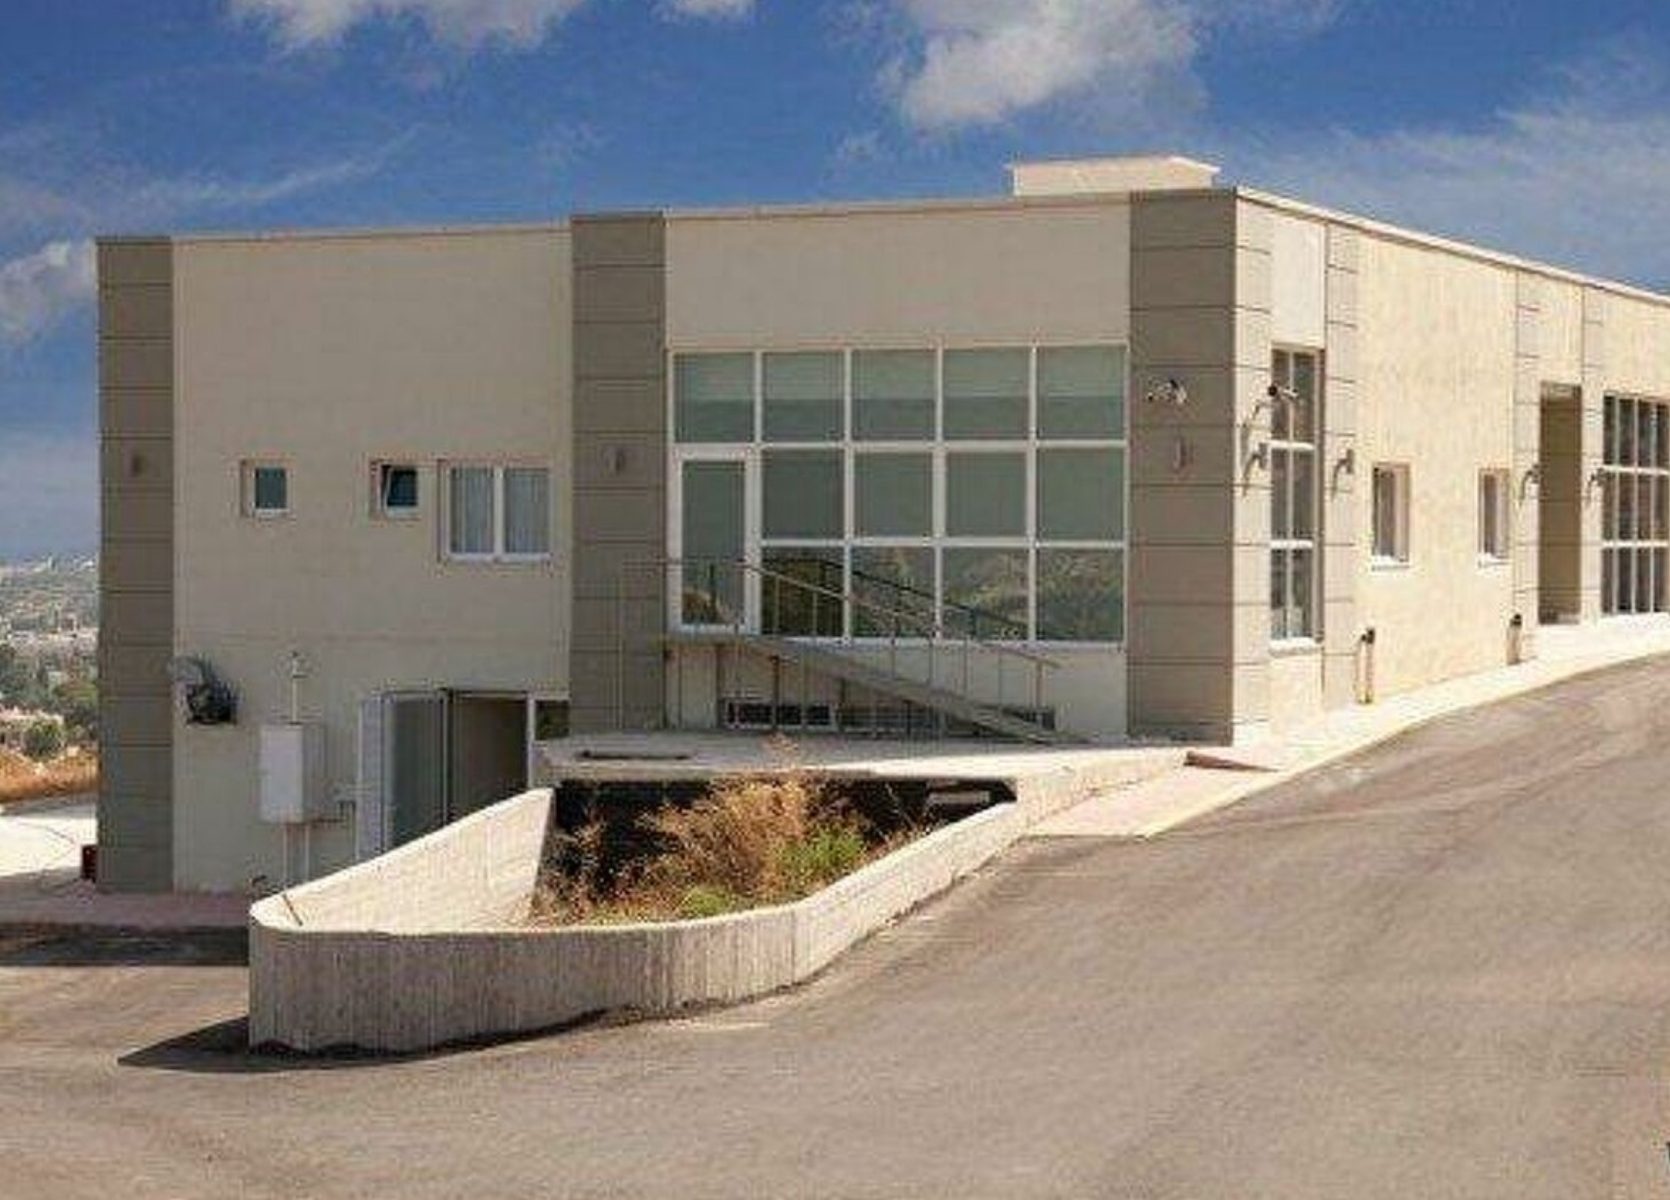 Γηροκομείο Χανιά: Εν μέσω πανδημίας είδαμε πολλά κολαστήρια | Ειδησεις |  Pagenews.gr